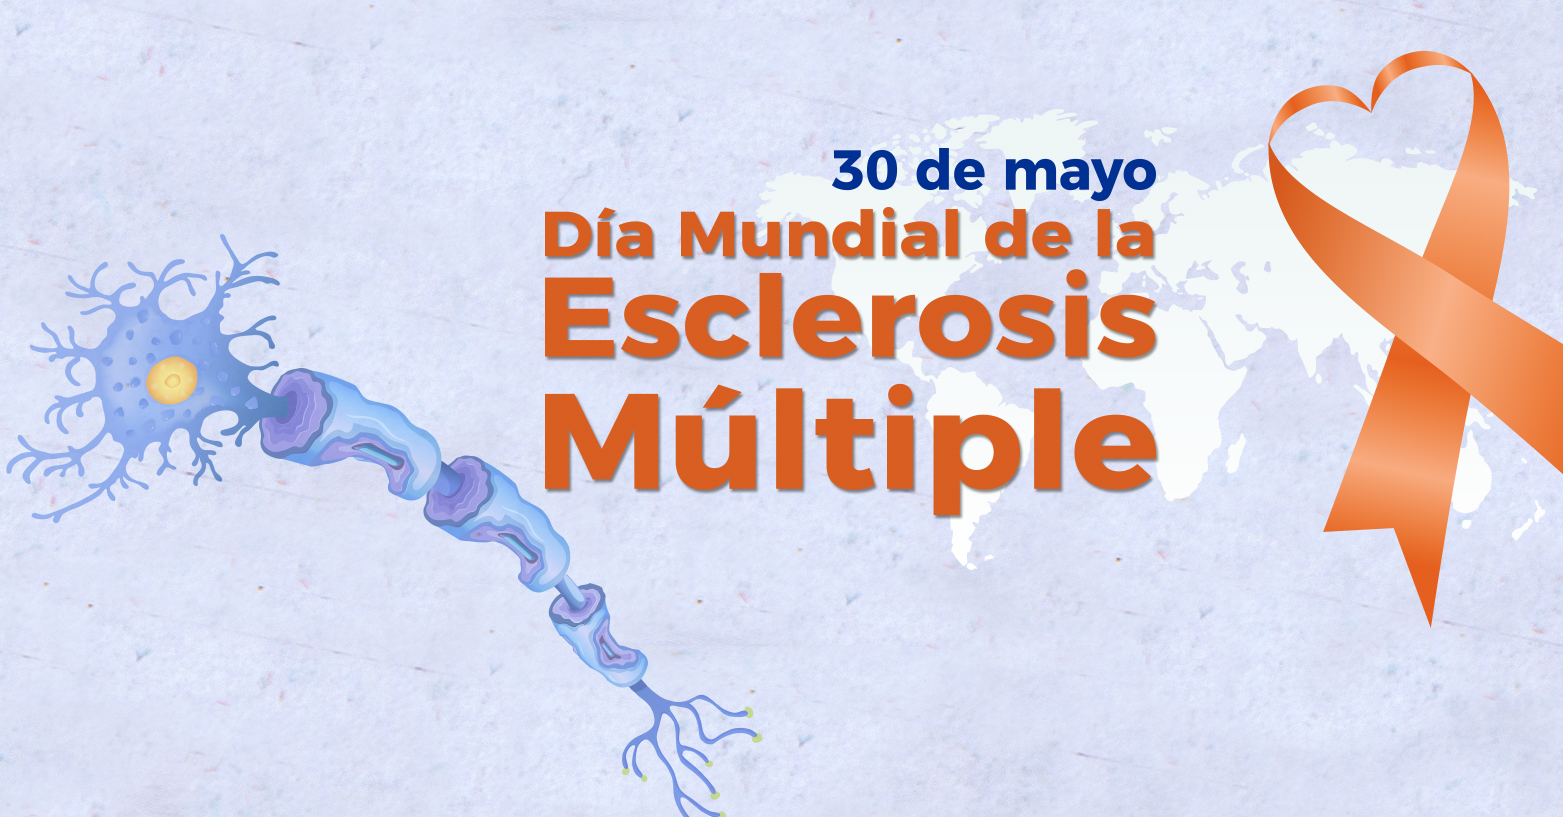 30 de mayo: Día mundial de la Esclerosis Múltiple.